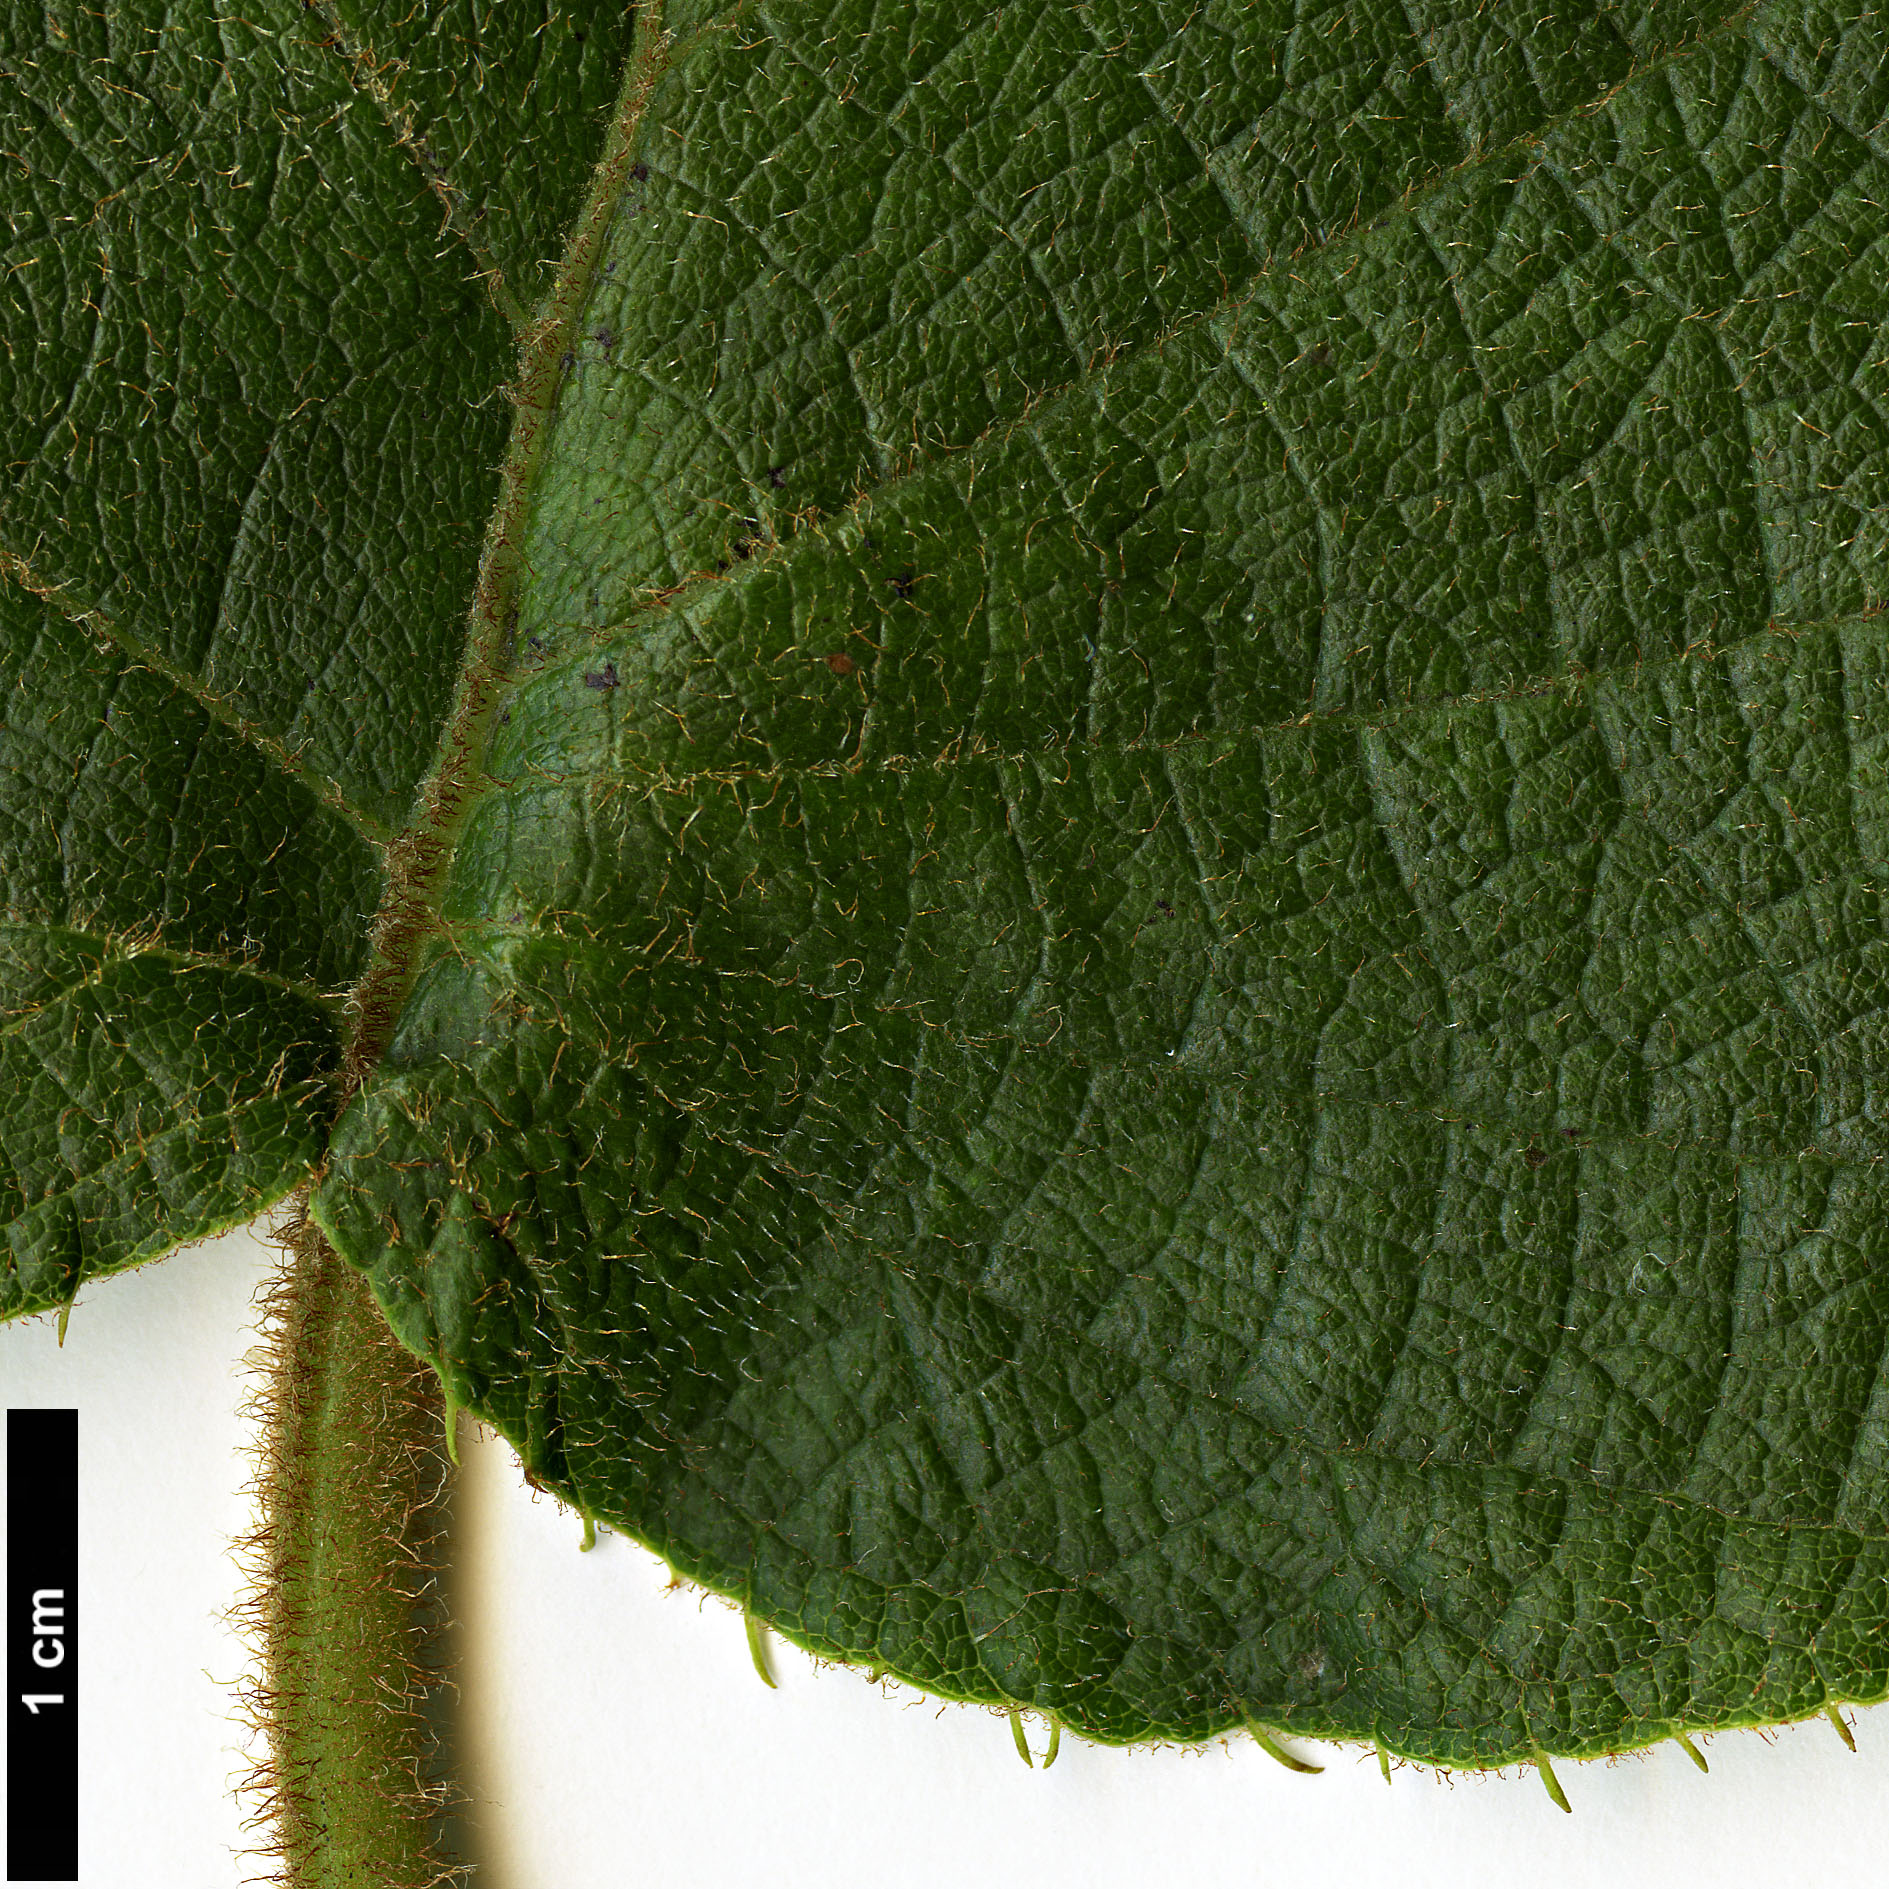 High resolution image: Family: Actinidiaceae - Genus: Actinidia - Taxon: setosa